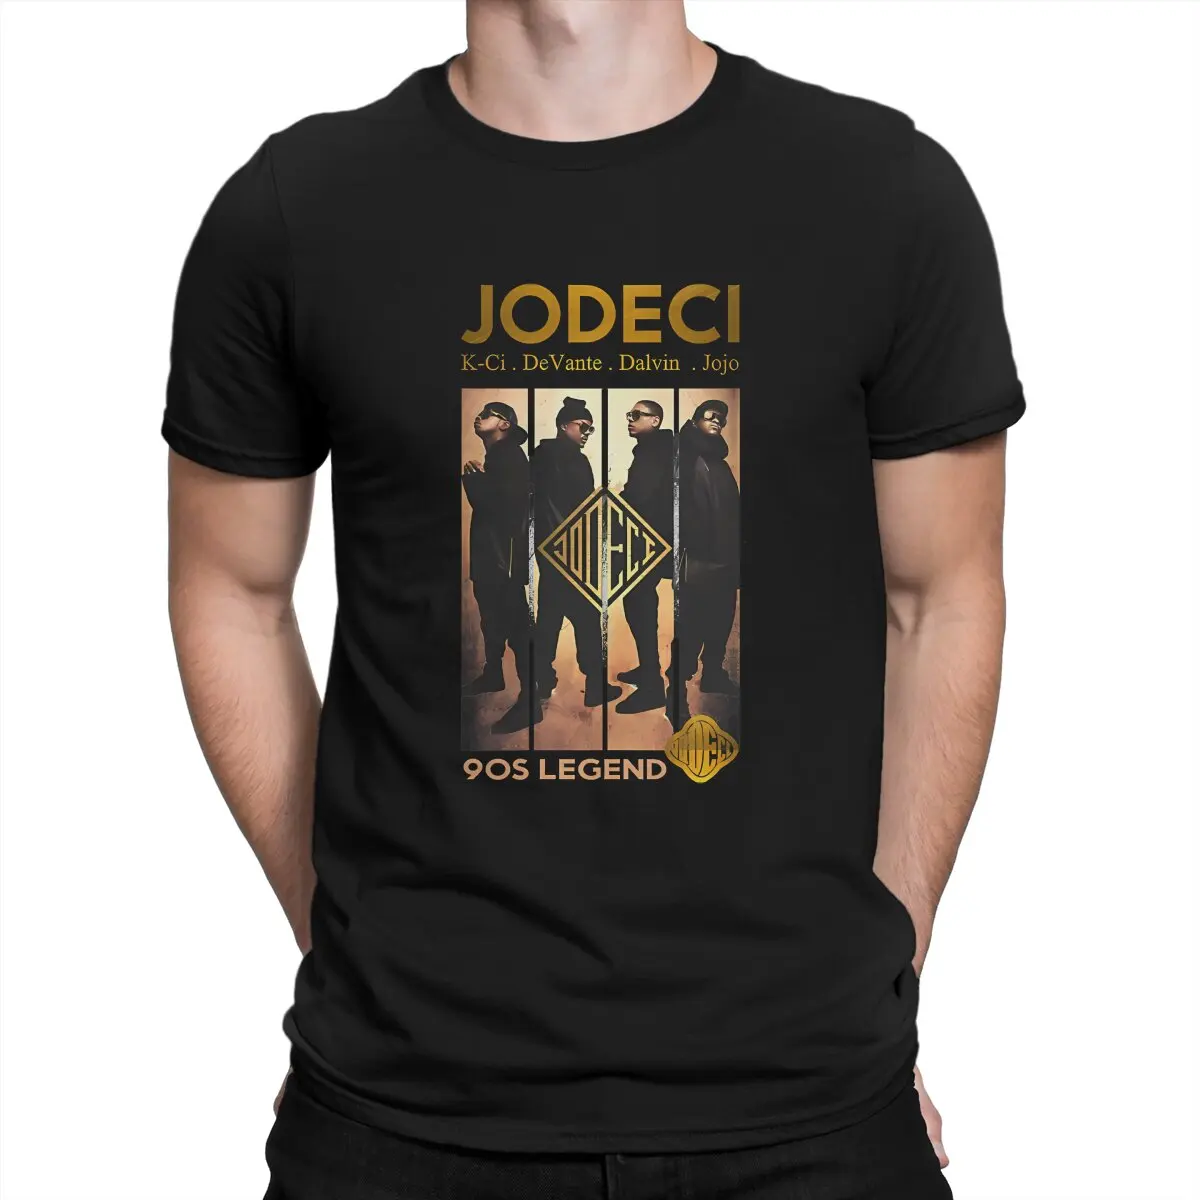 

Мужская футболка Jodeci Band, модная футболка с графическим принтом для фанатов, хипстер